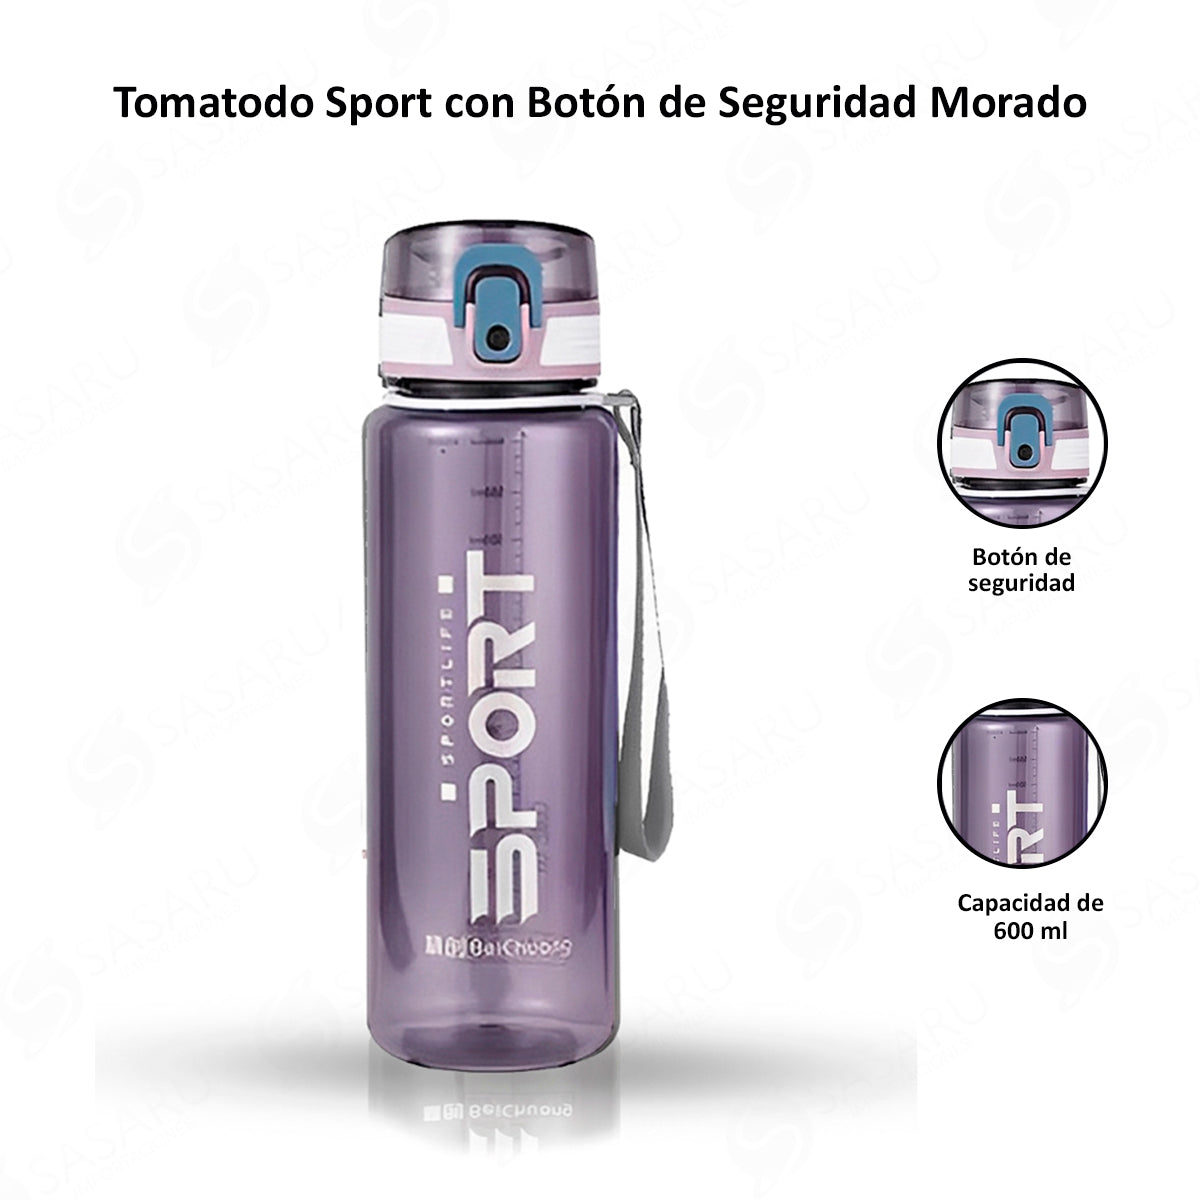 Tomatodo Sport 600ml con Botón de Seguridad